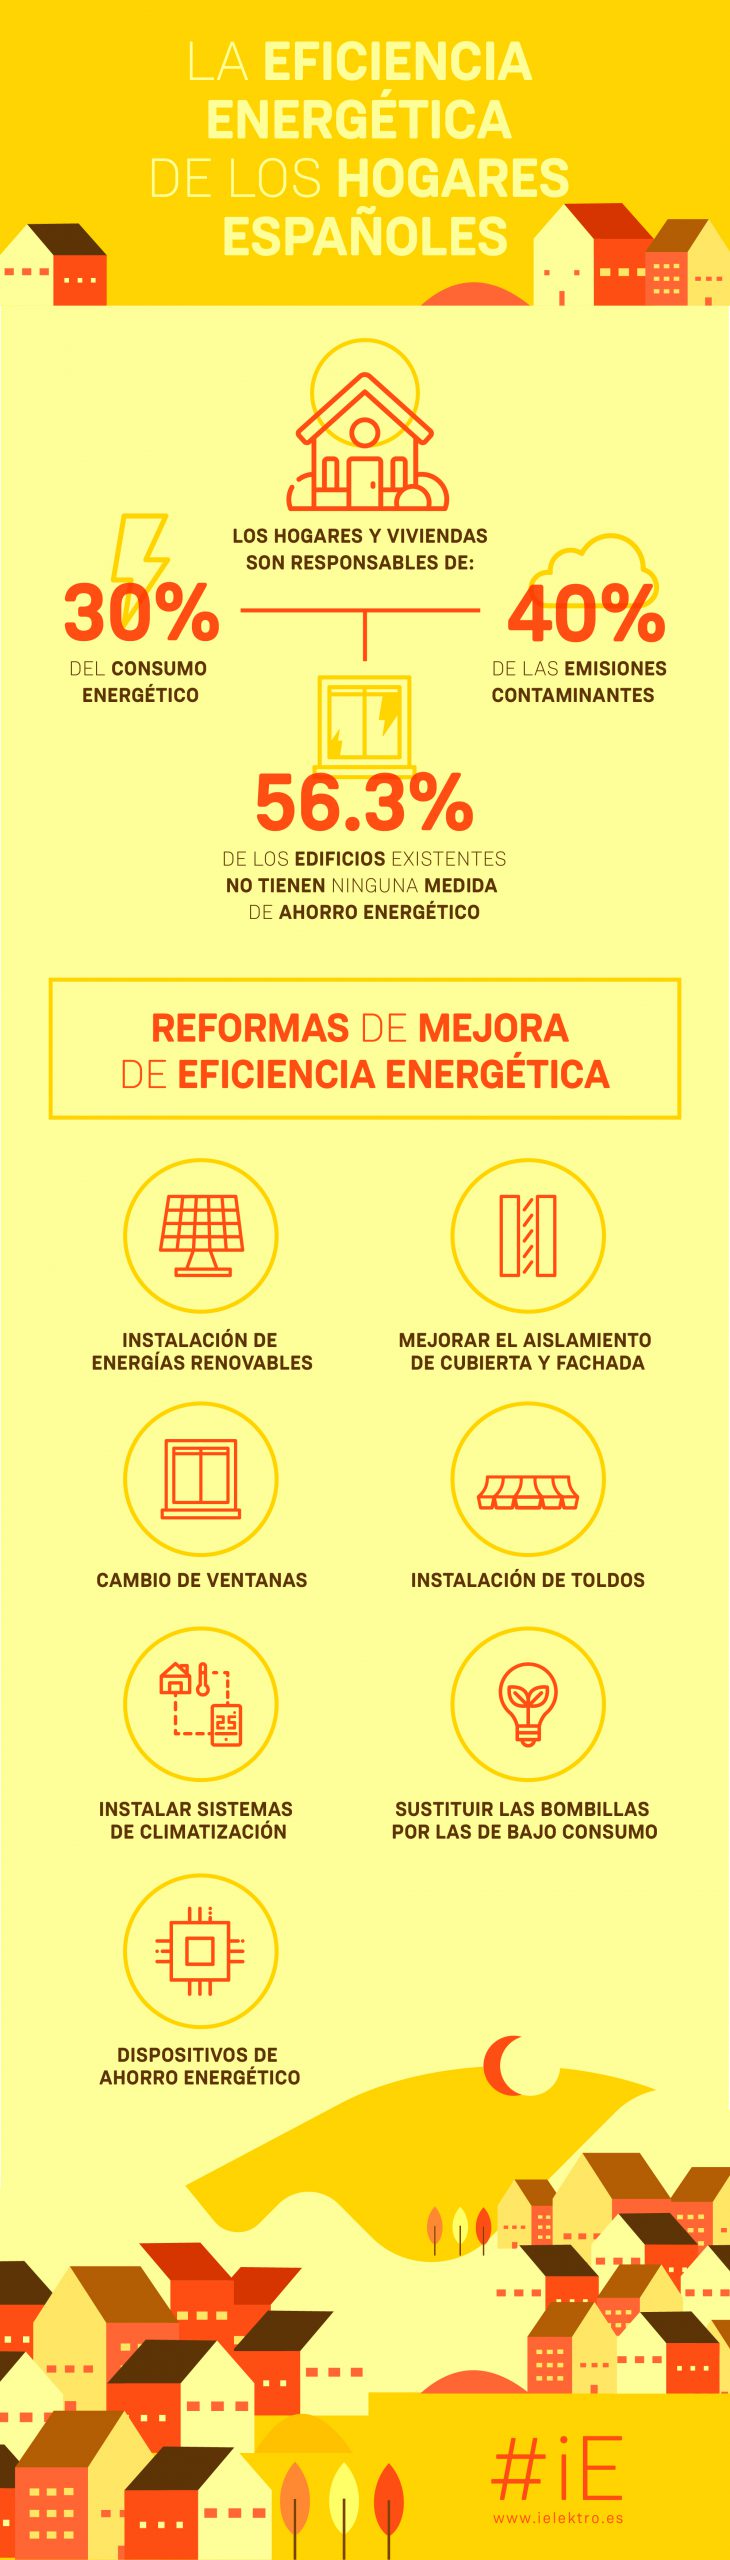 [INFOGRAFÍA] La eficiencia energética de los hogares españoles